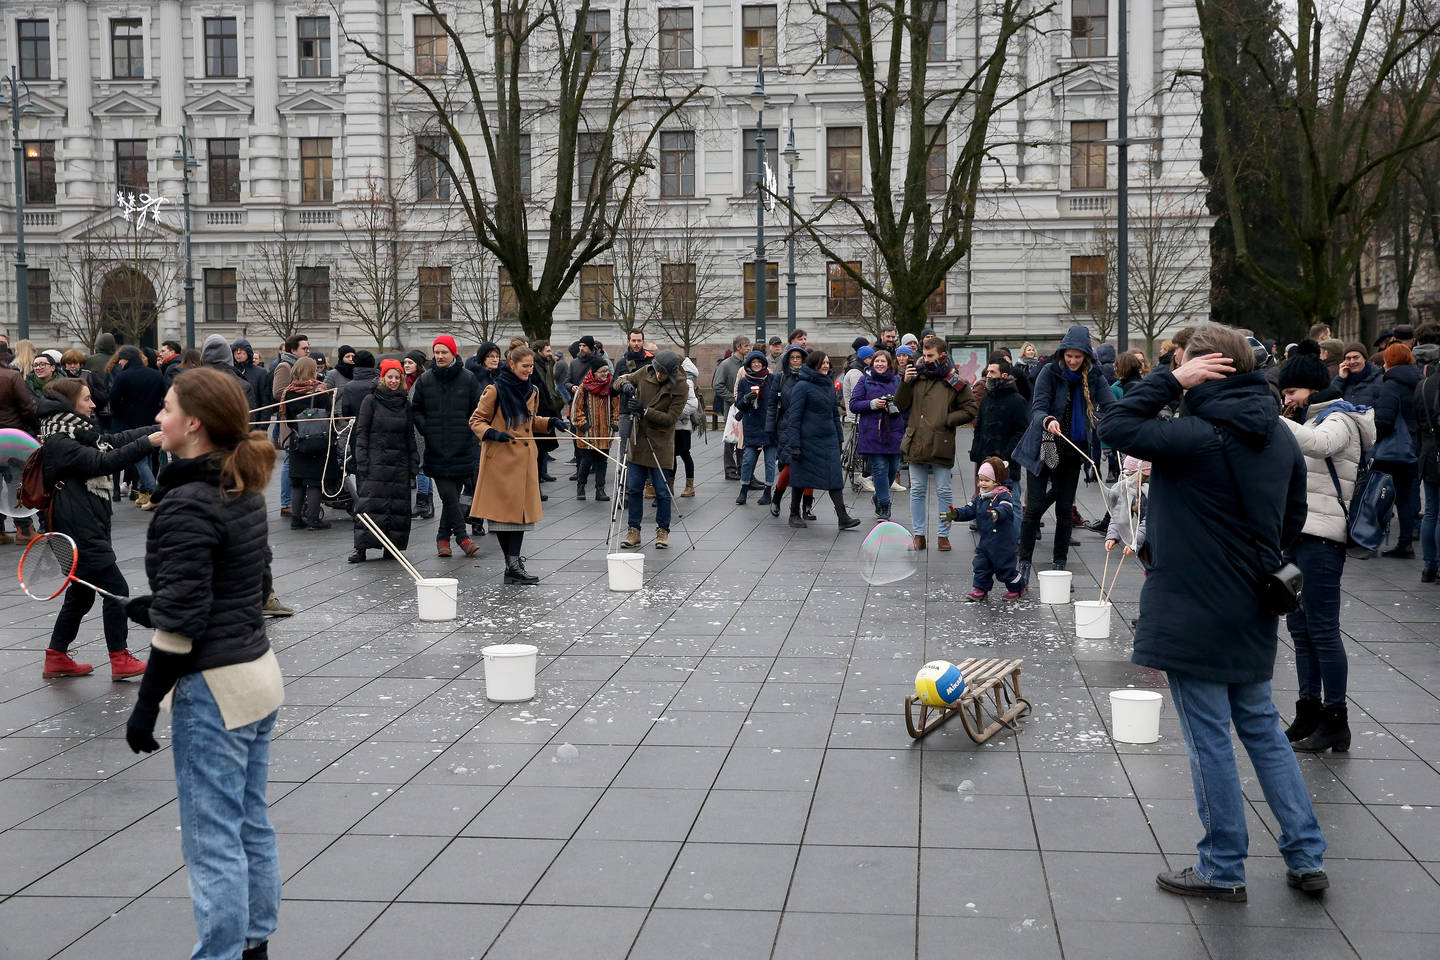 Lukiškių aikštėje vienu metu vyko dvi protesto akcijos.<br> R.Danisevičiaus nuotr.